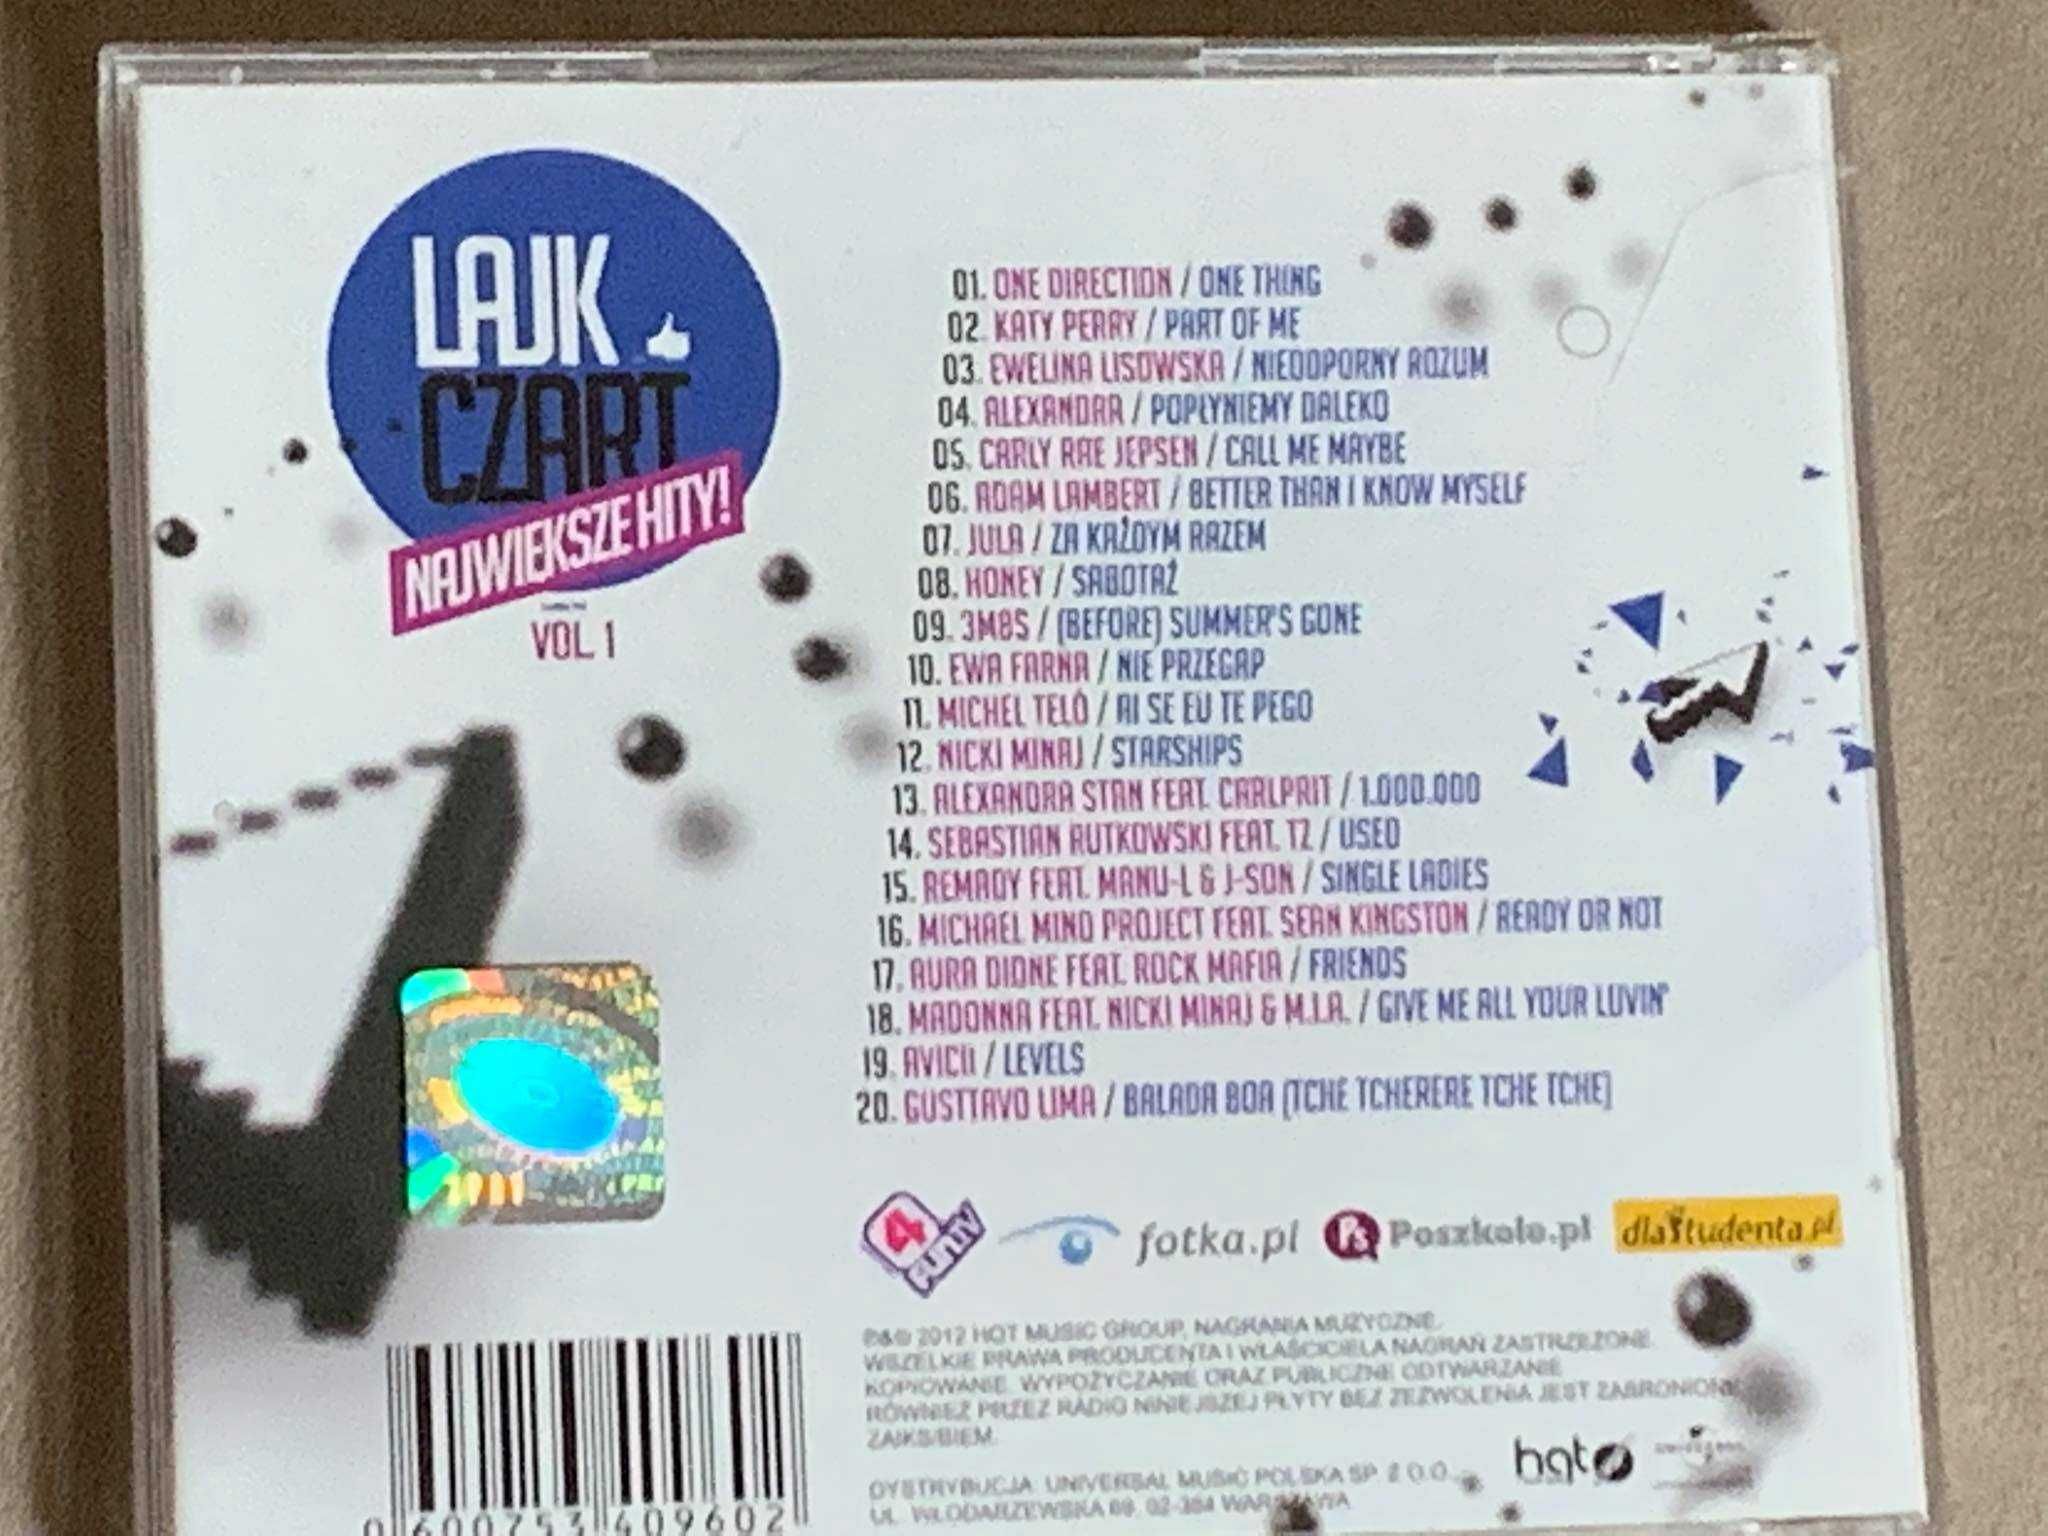 4 Fun Lajk Czart Vol.1 - CD (Gustavo Lima, Madonna, Jula) - stan EX!